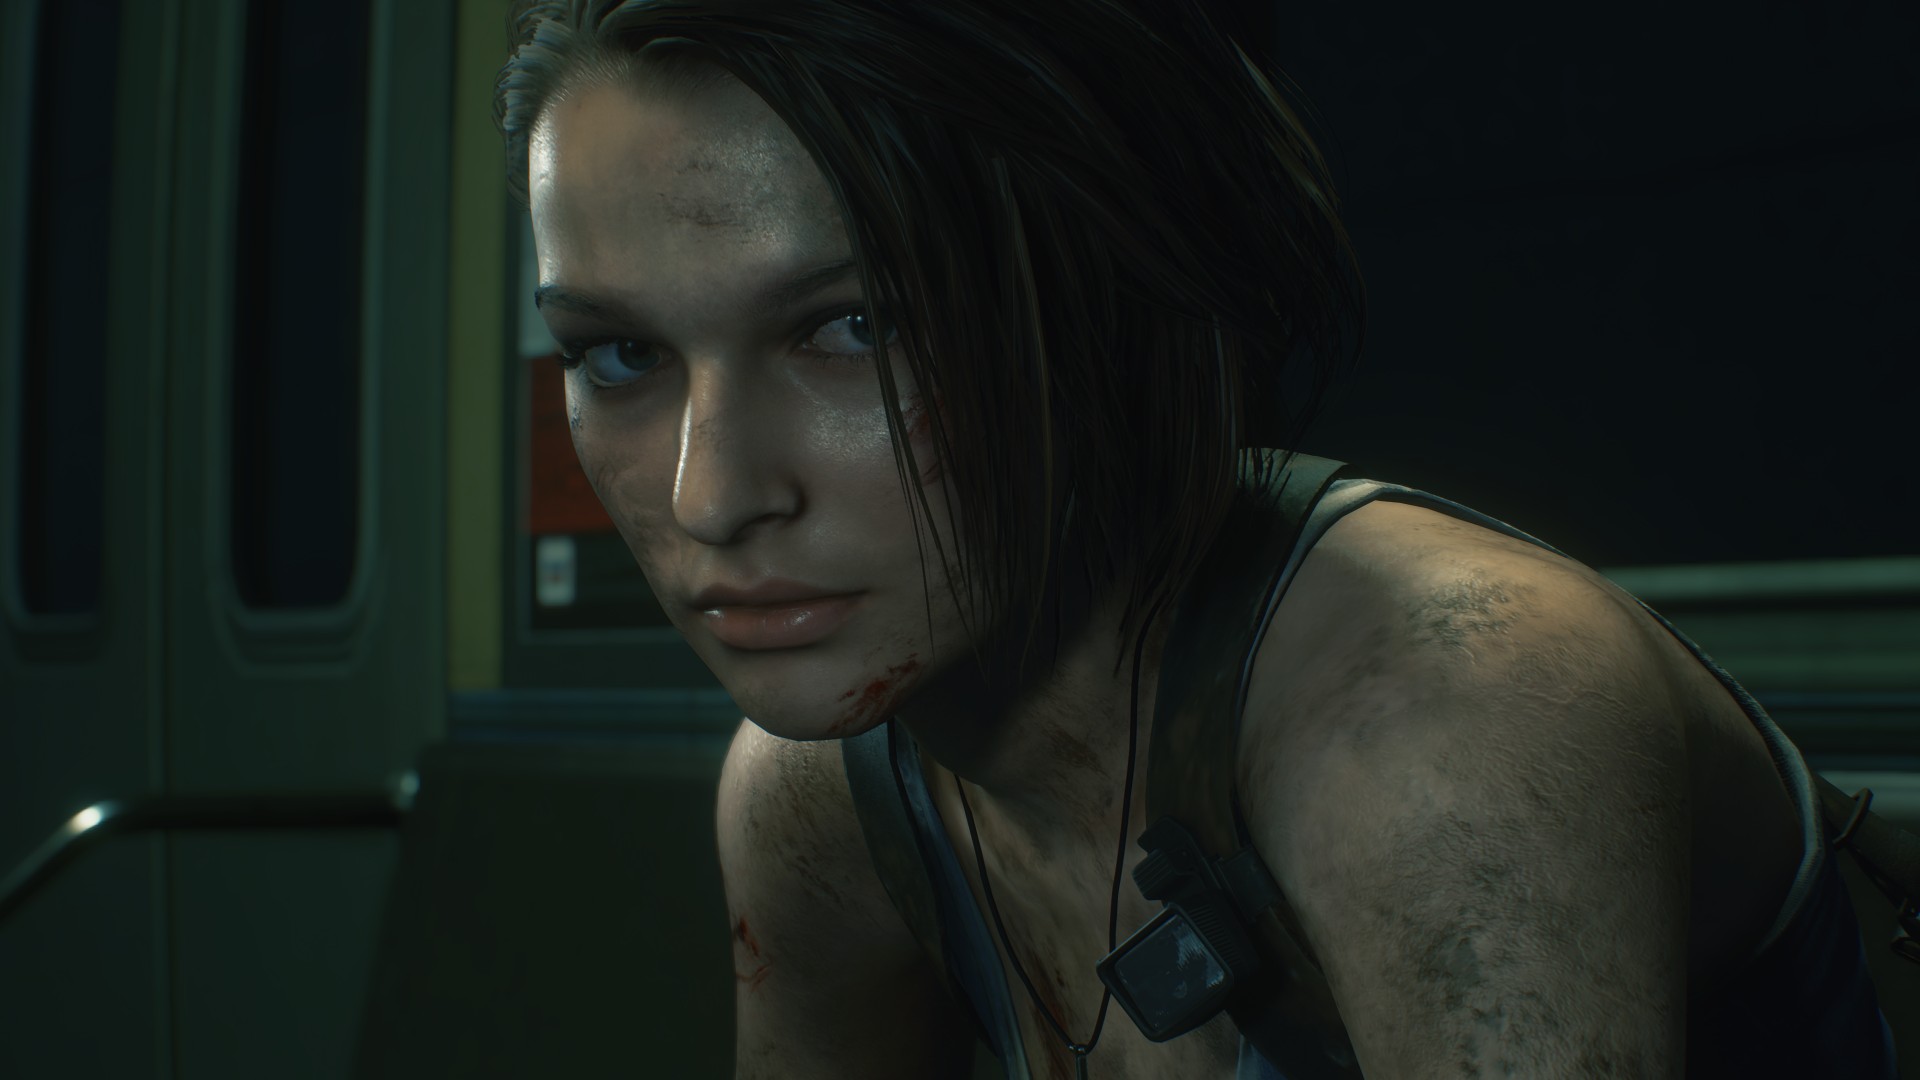  Les ambassadeurs Capcom invités à essayer un nouveau jeu… Resident Evil 8 ?